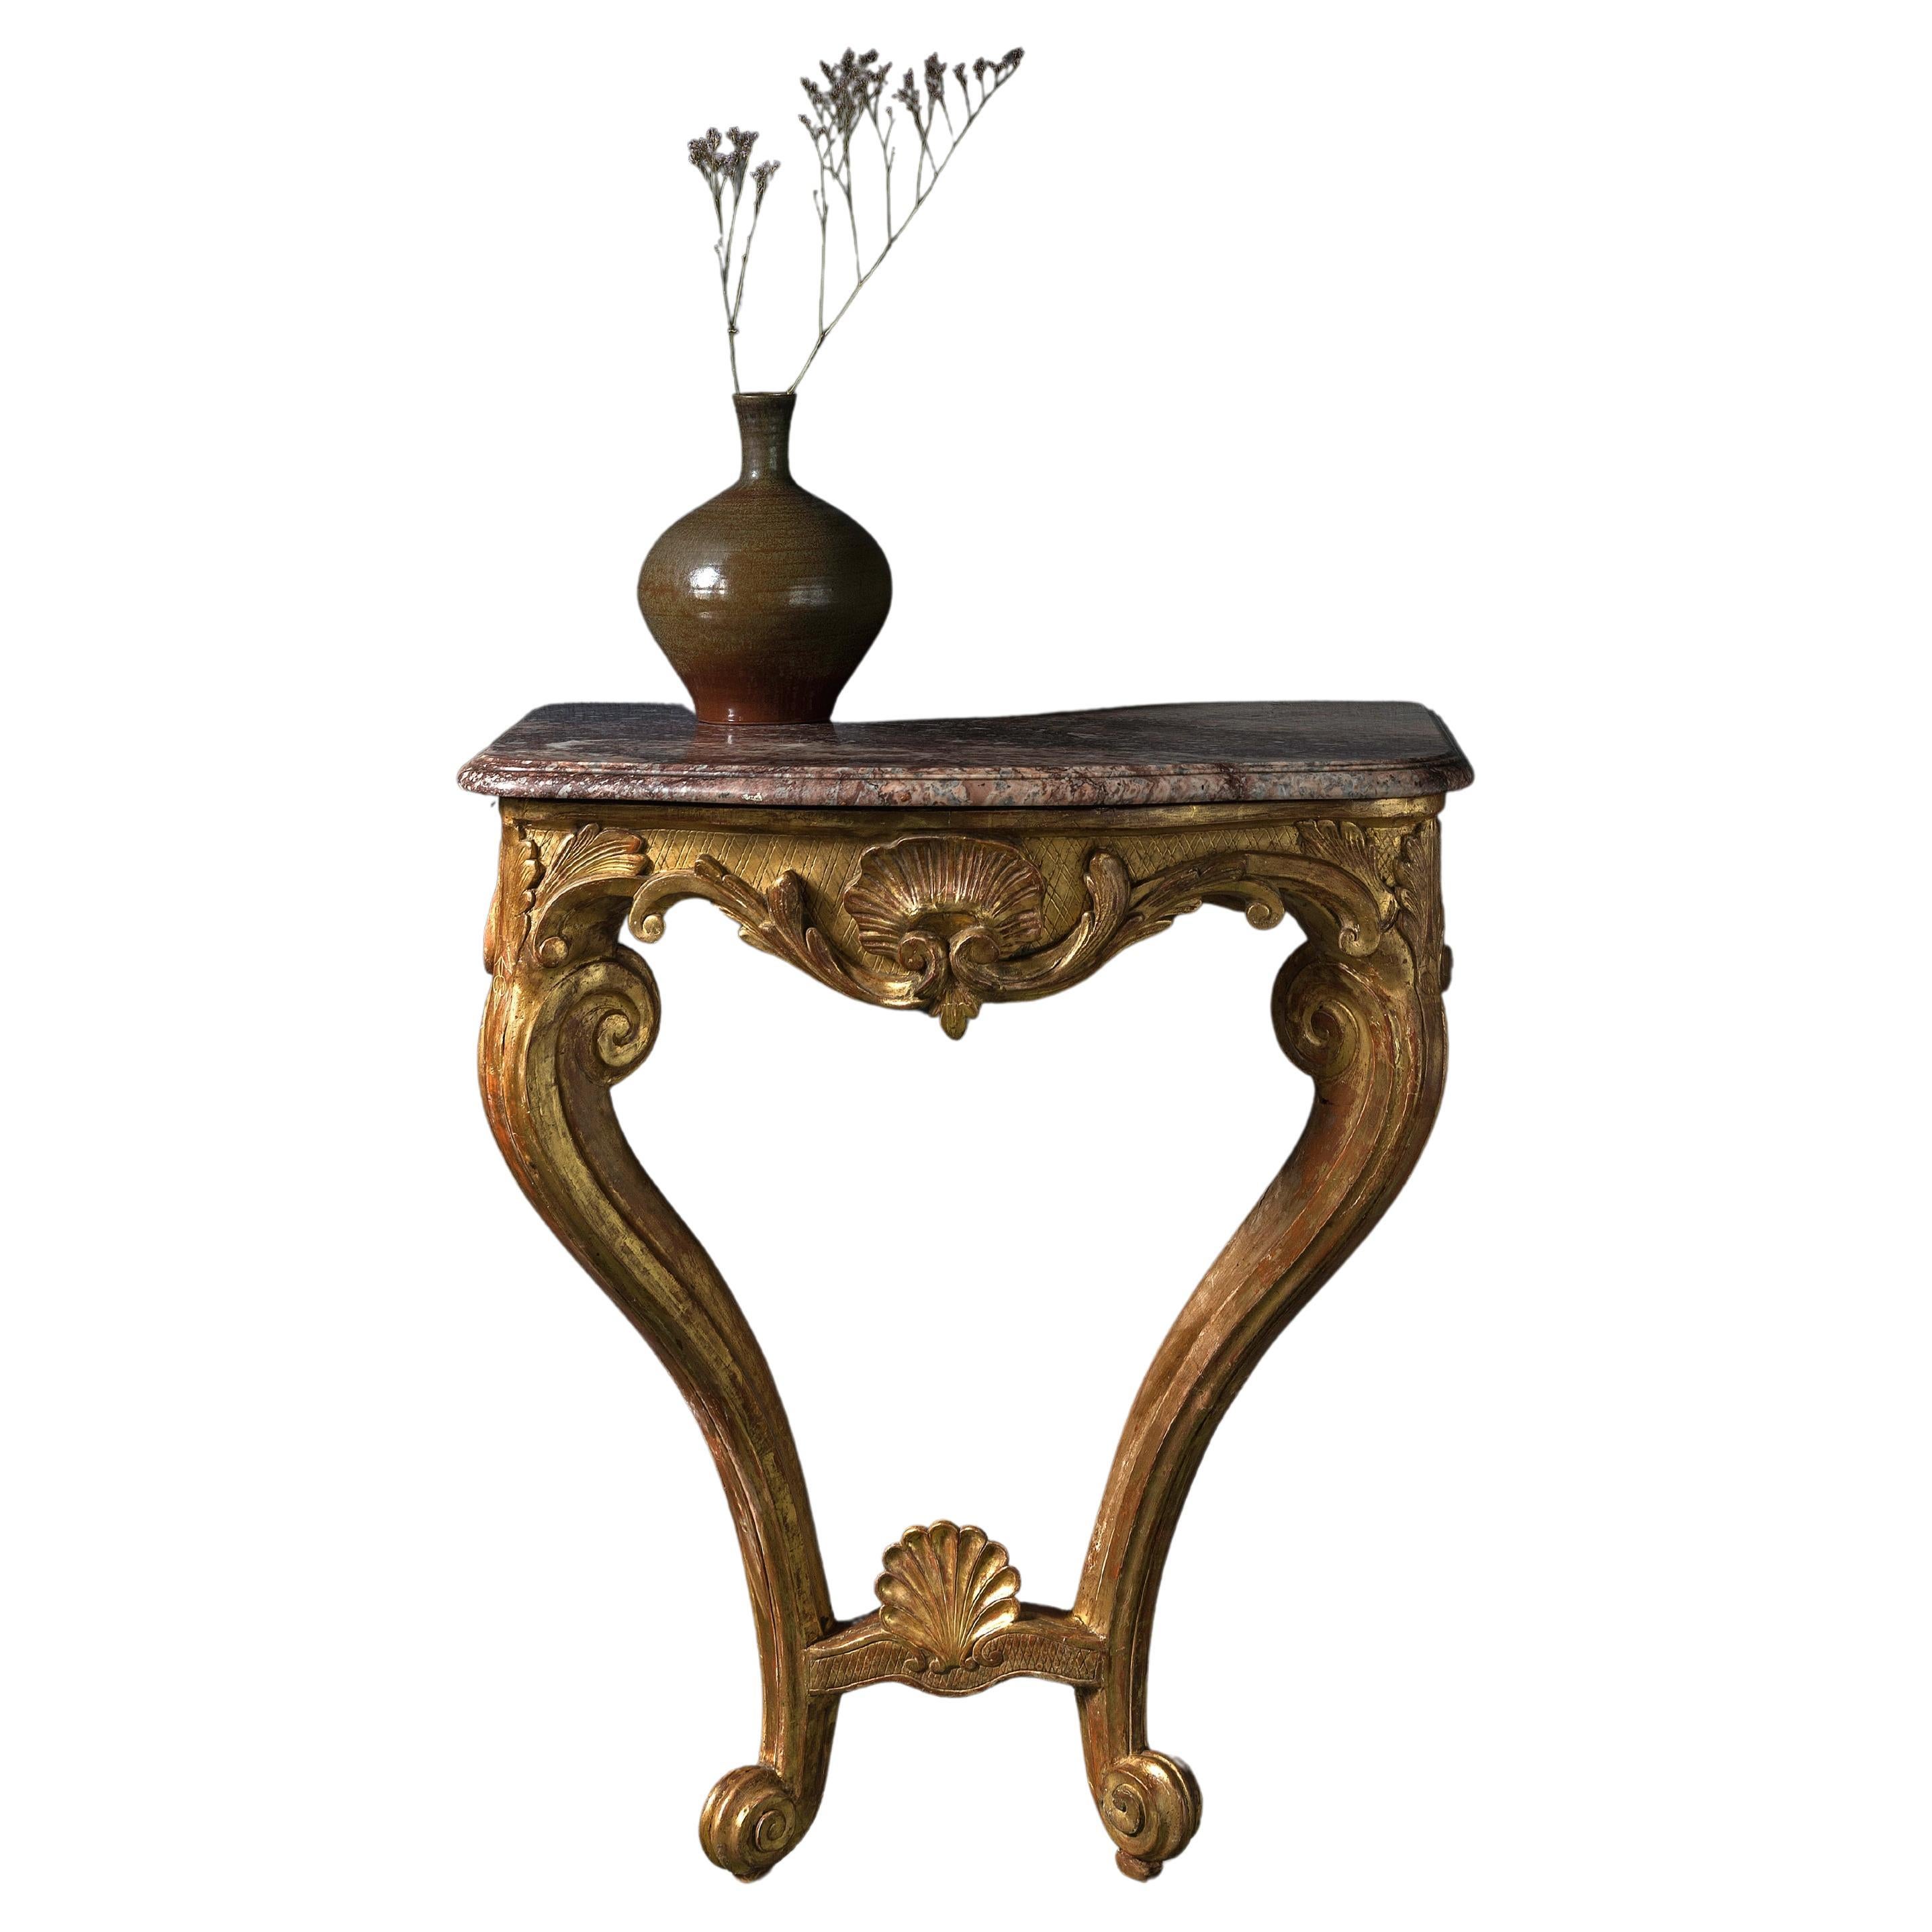 Sehr elegante Konsole aus geschnitztem Goldholz des 18. und 19. Jahrhunderts mit Marmorplatte.